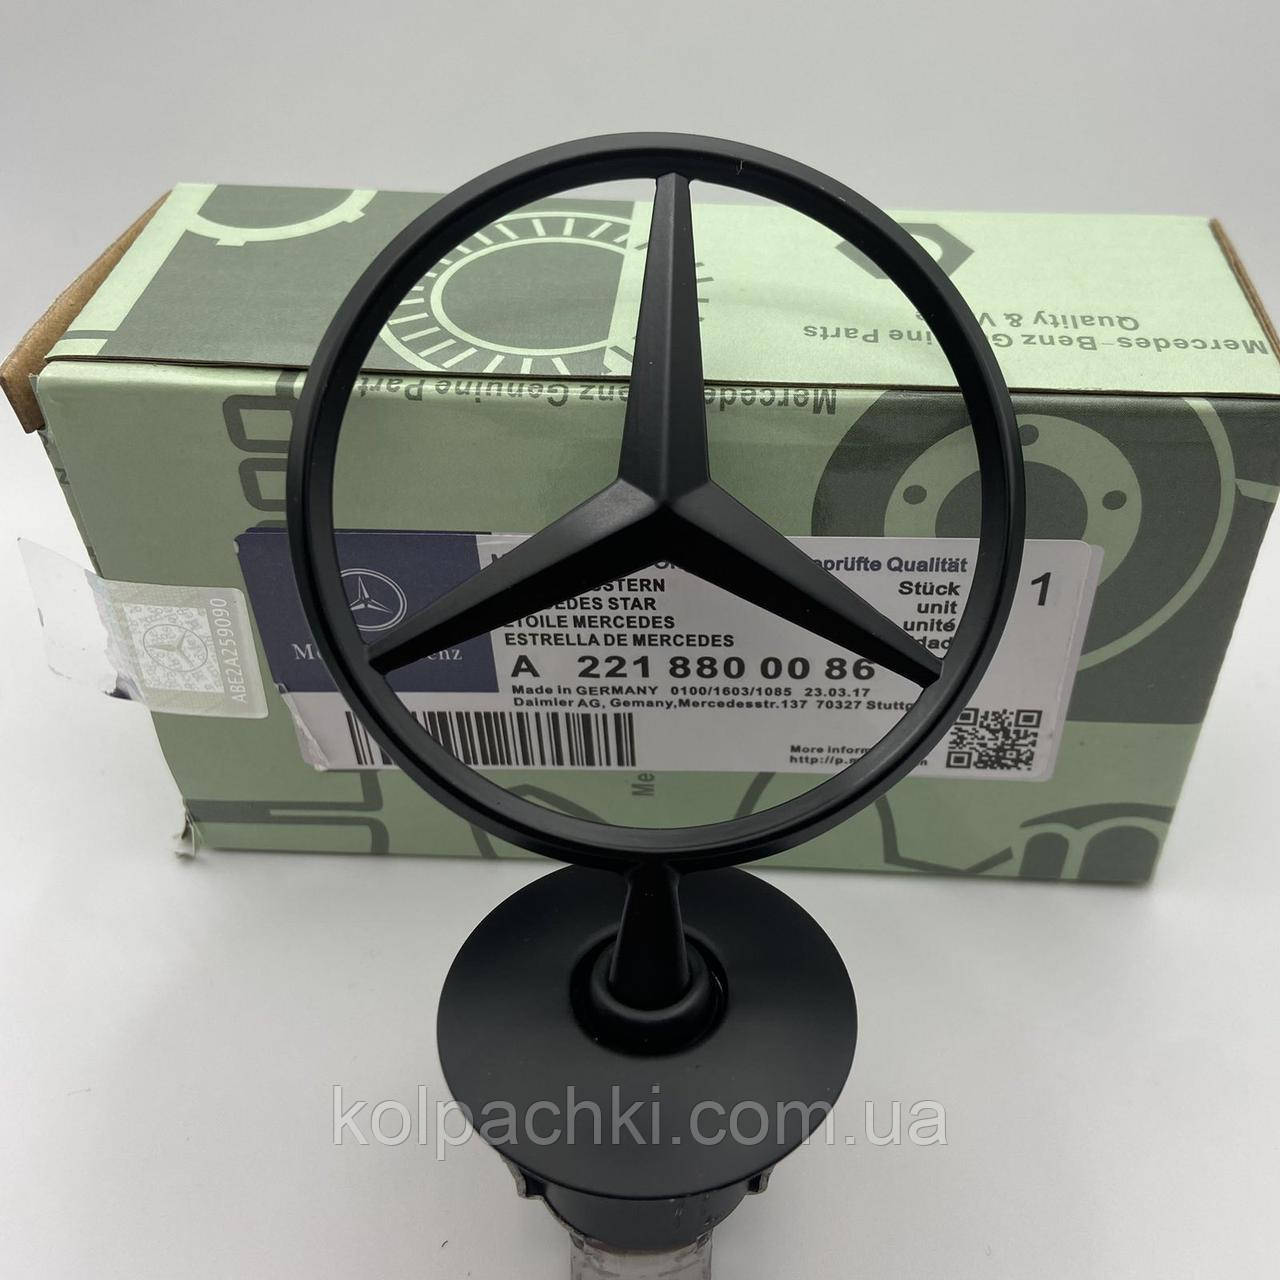 Mercedes емблема видошукач зірка на капот новий чорний матовий